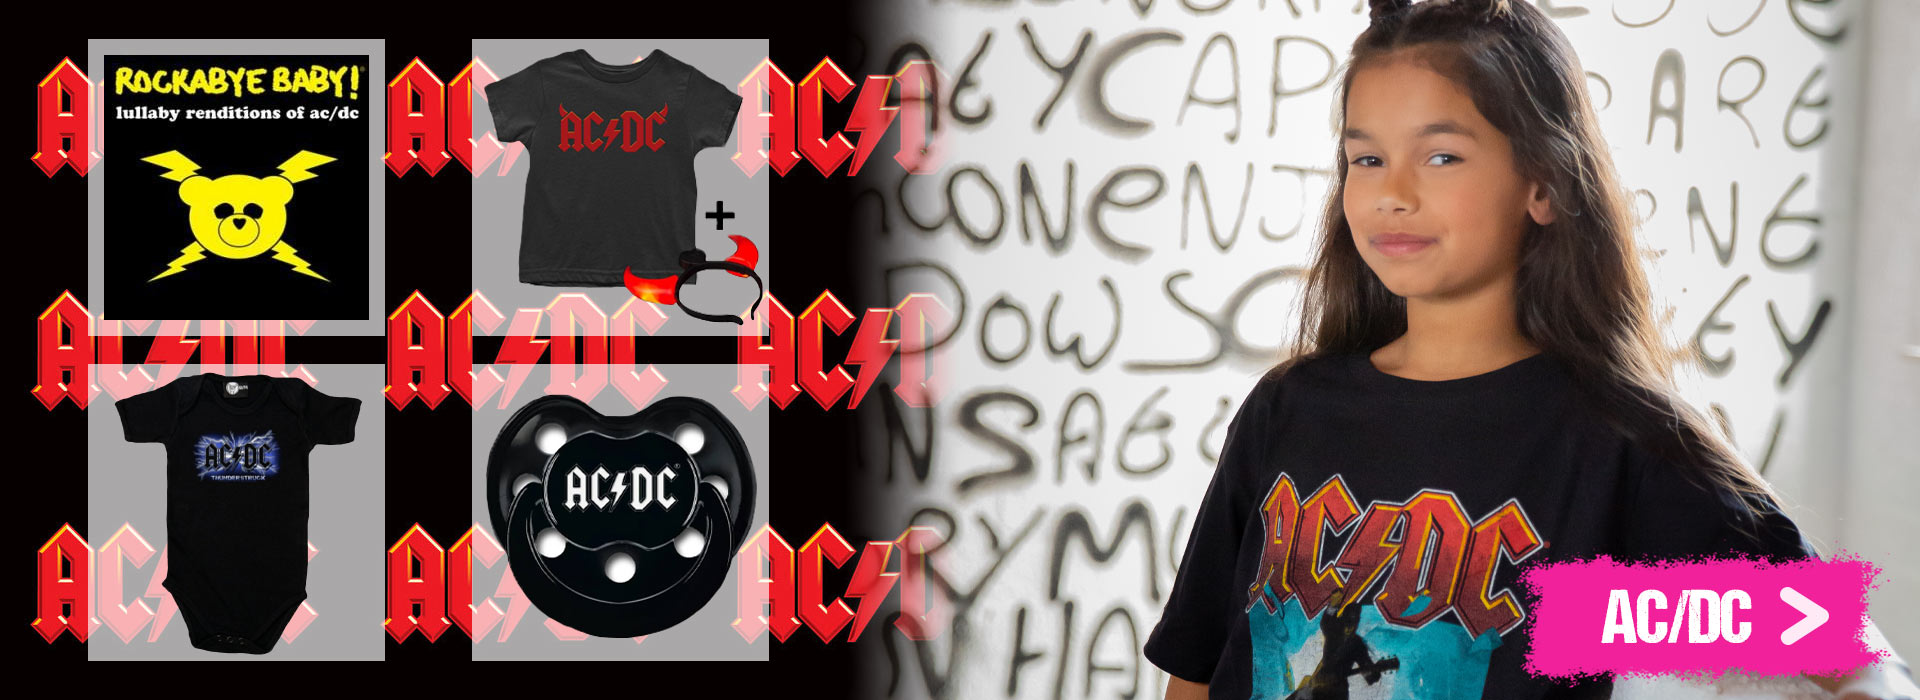 AC/DC vêtement bébé rock